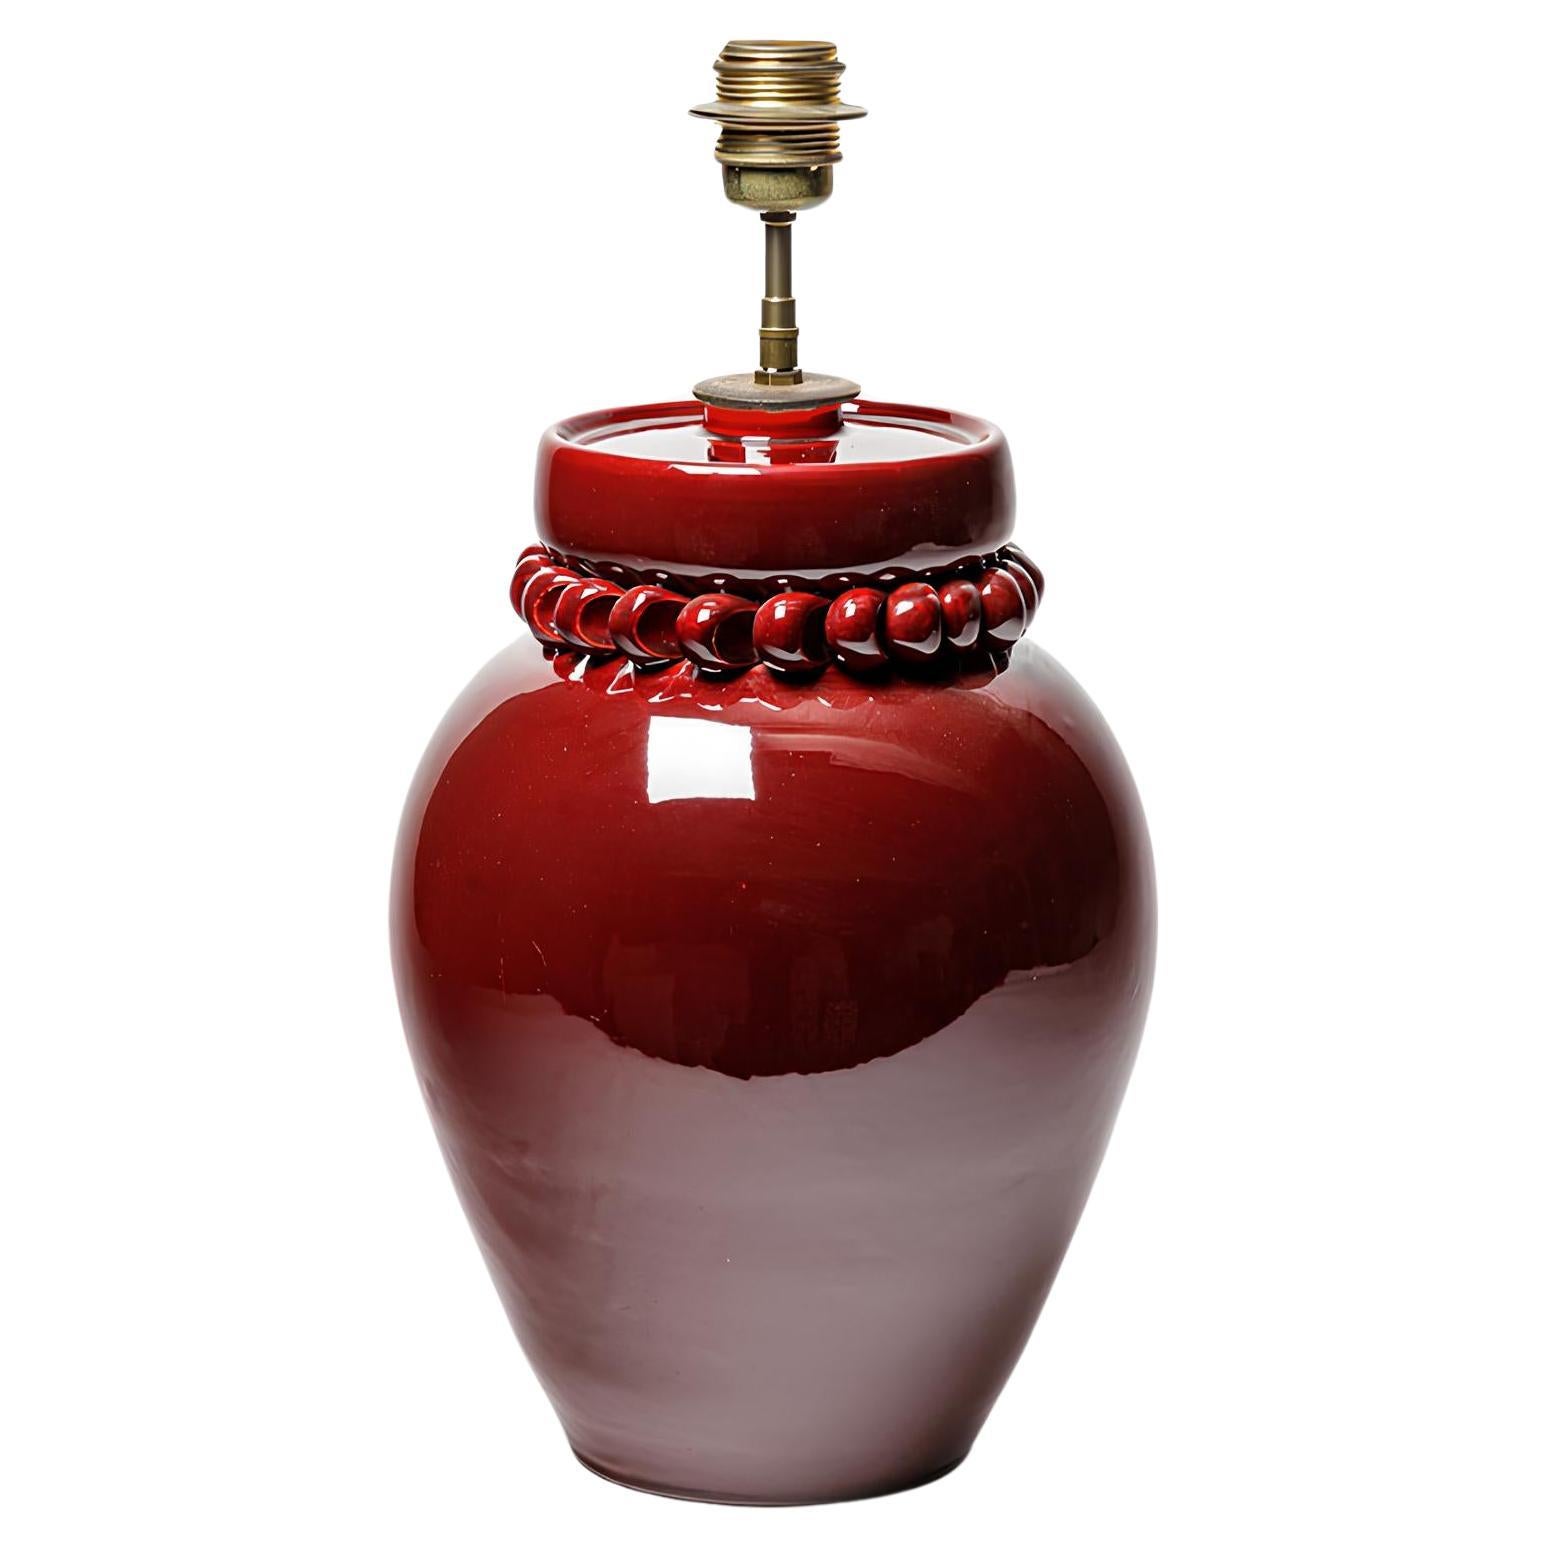  Tischlampe aus rot glasierter Keramik von Pol Chambost, ca. 1930-1950. 